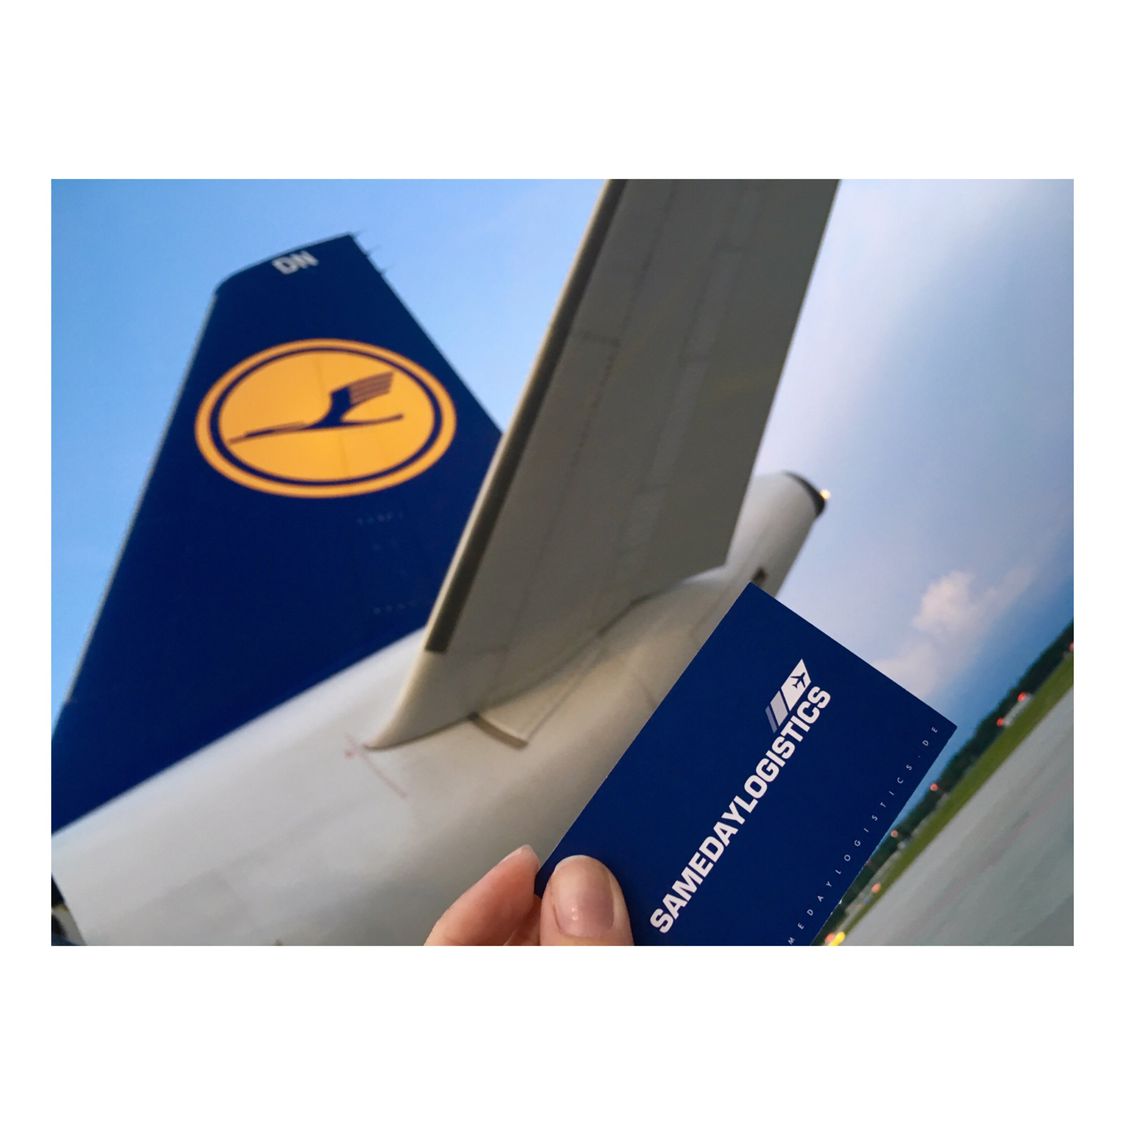 Samedaylogistic und Lufthansa